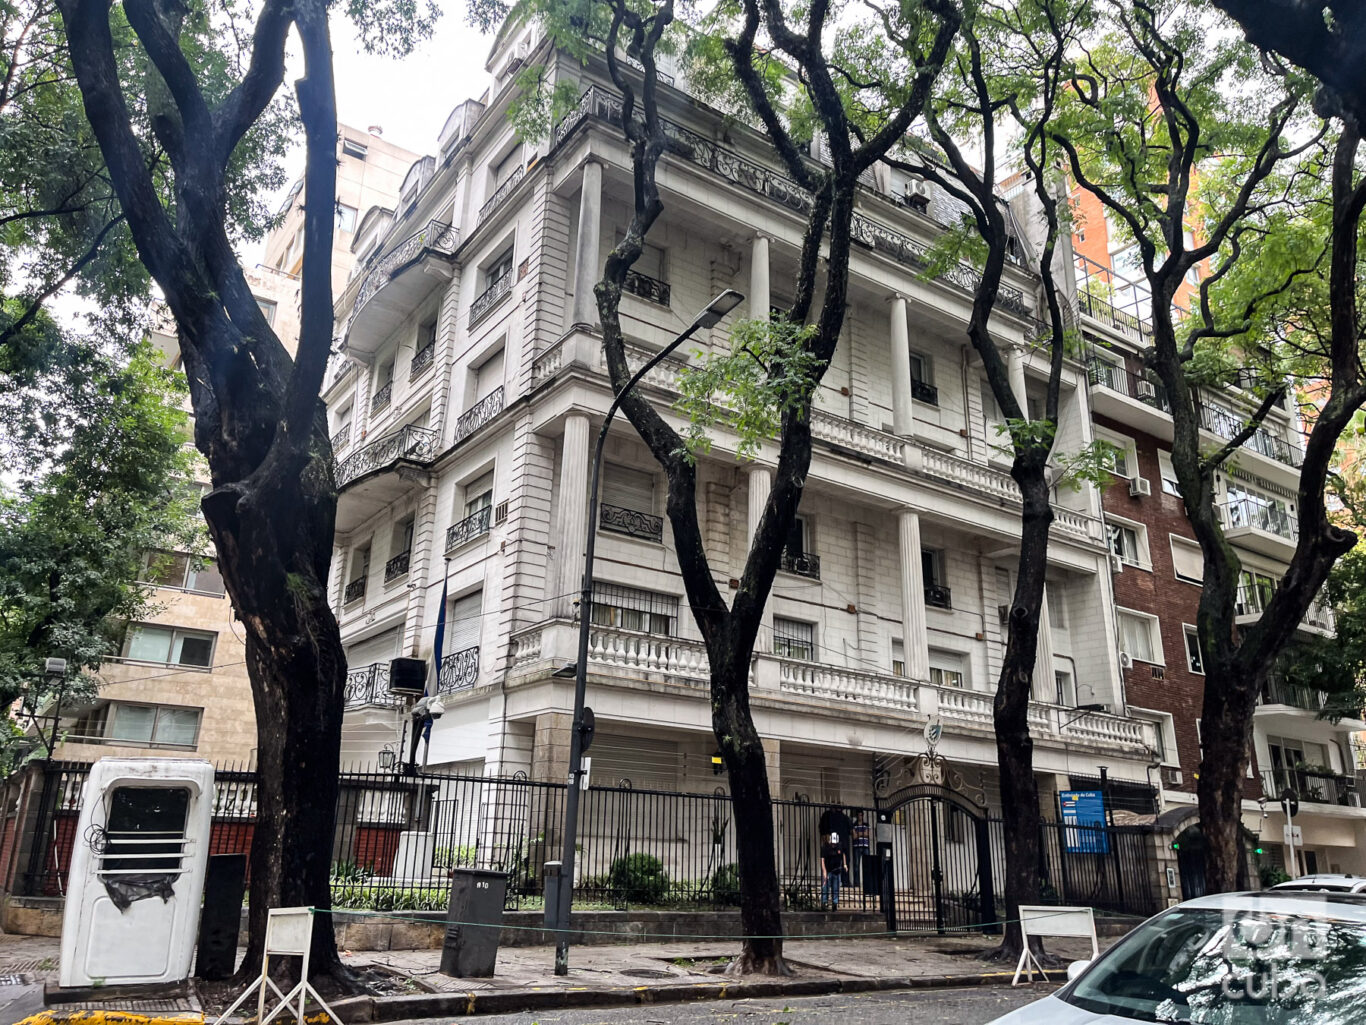 Embajada cubana en Buenos Aires, Argentina. Foto: Kaloian.